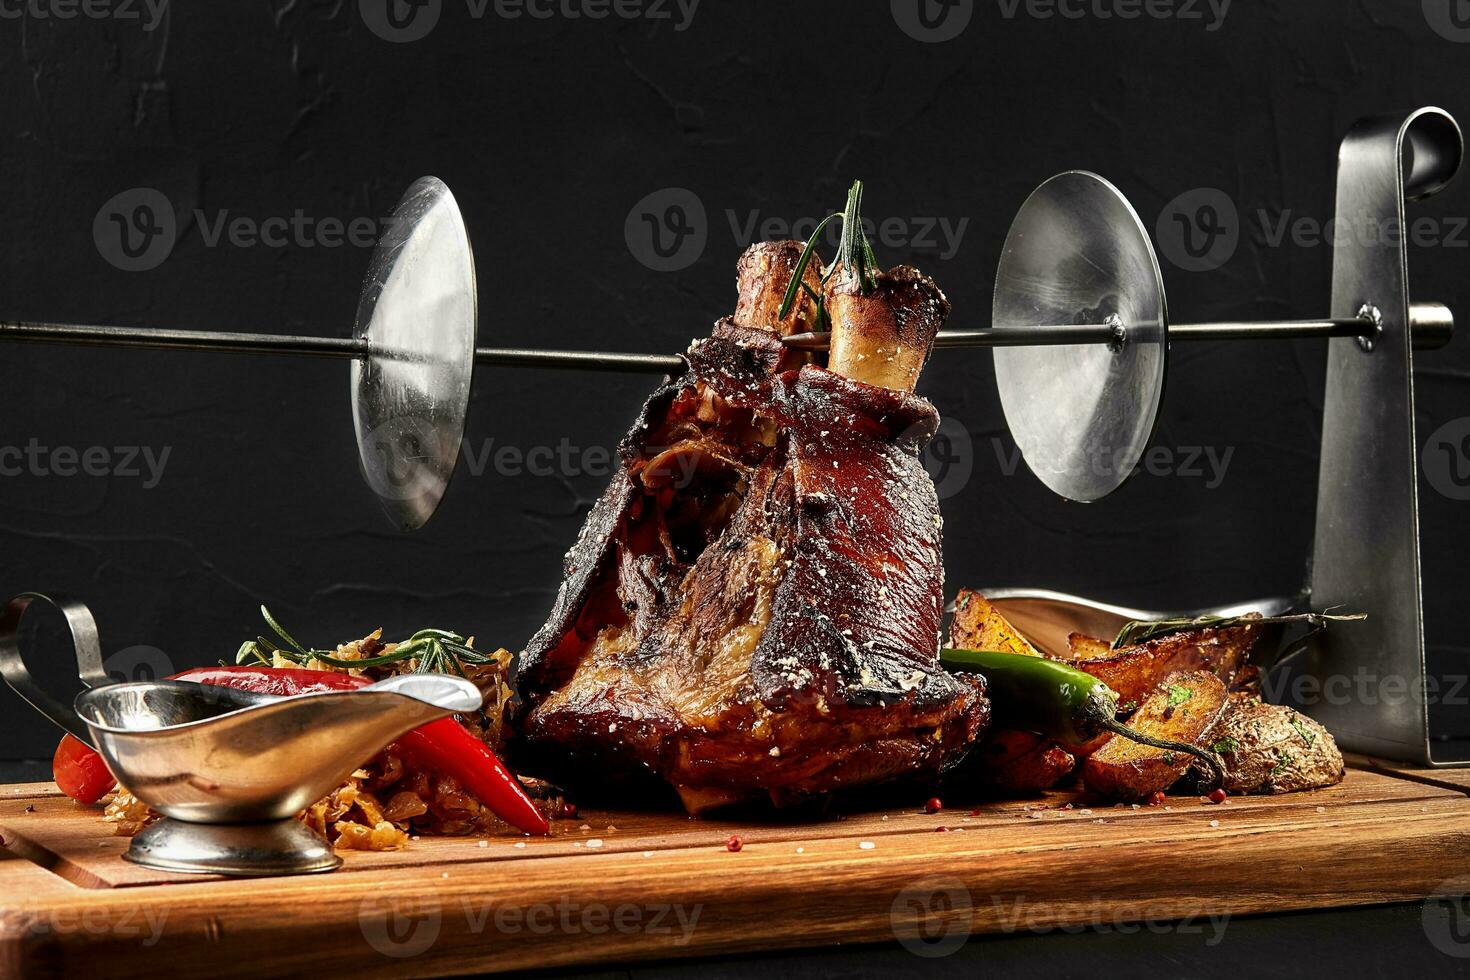 geröstet Schweinefleisch Knöchel Eisbein mit geschmort gekocht Kohl, Kartoffeln, Chili Pfeffer und Senf auf hölzern Schneiden Planke, auf ein schwarz Hintergrund foto